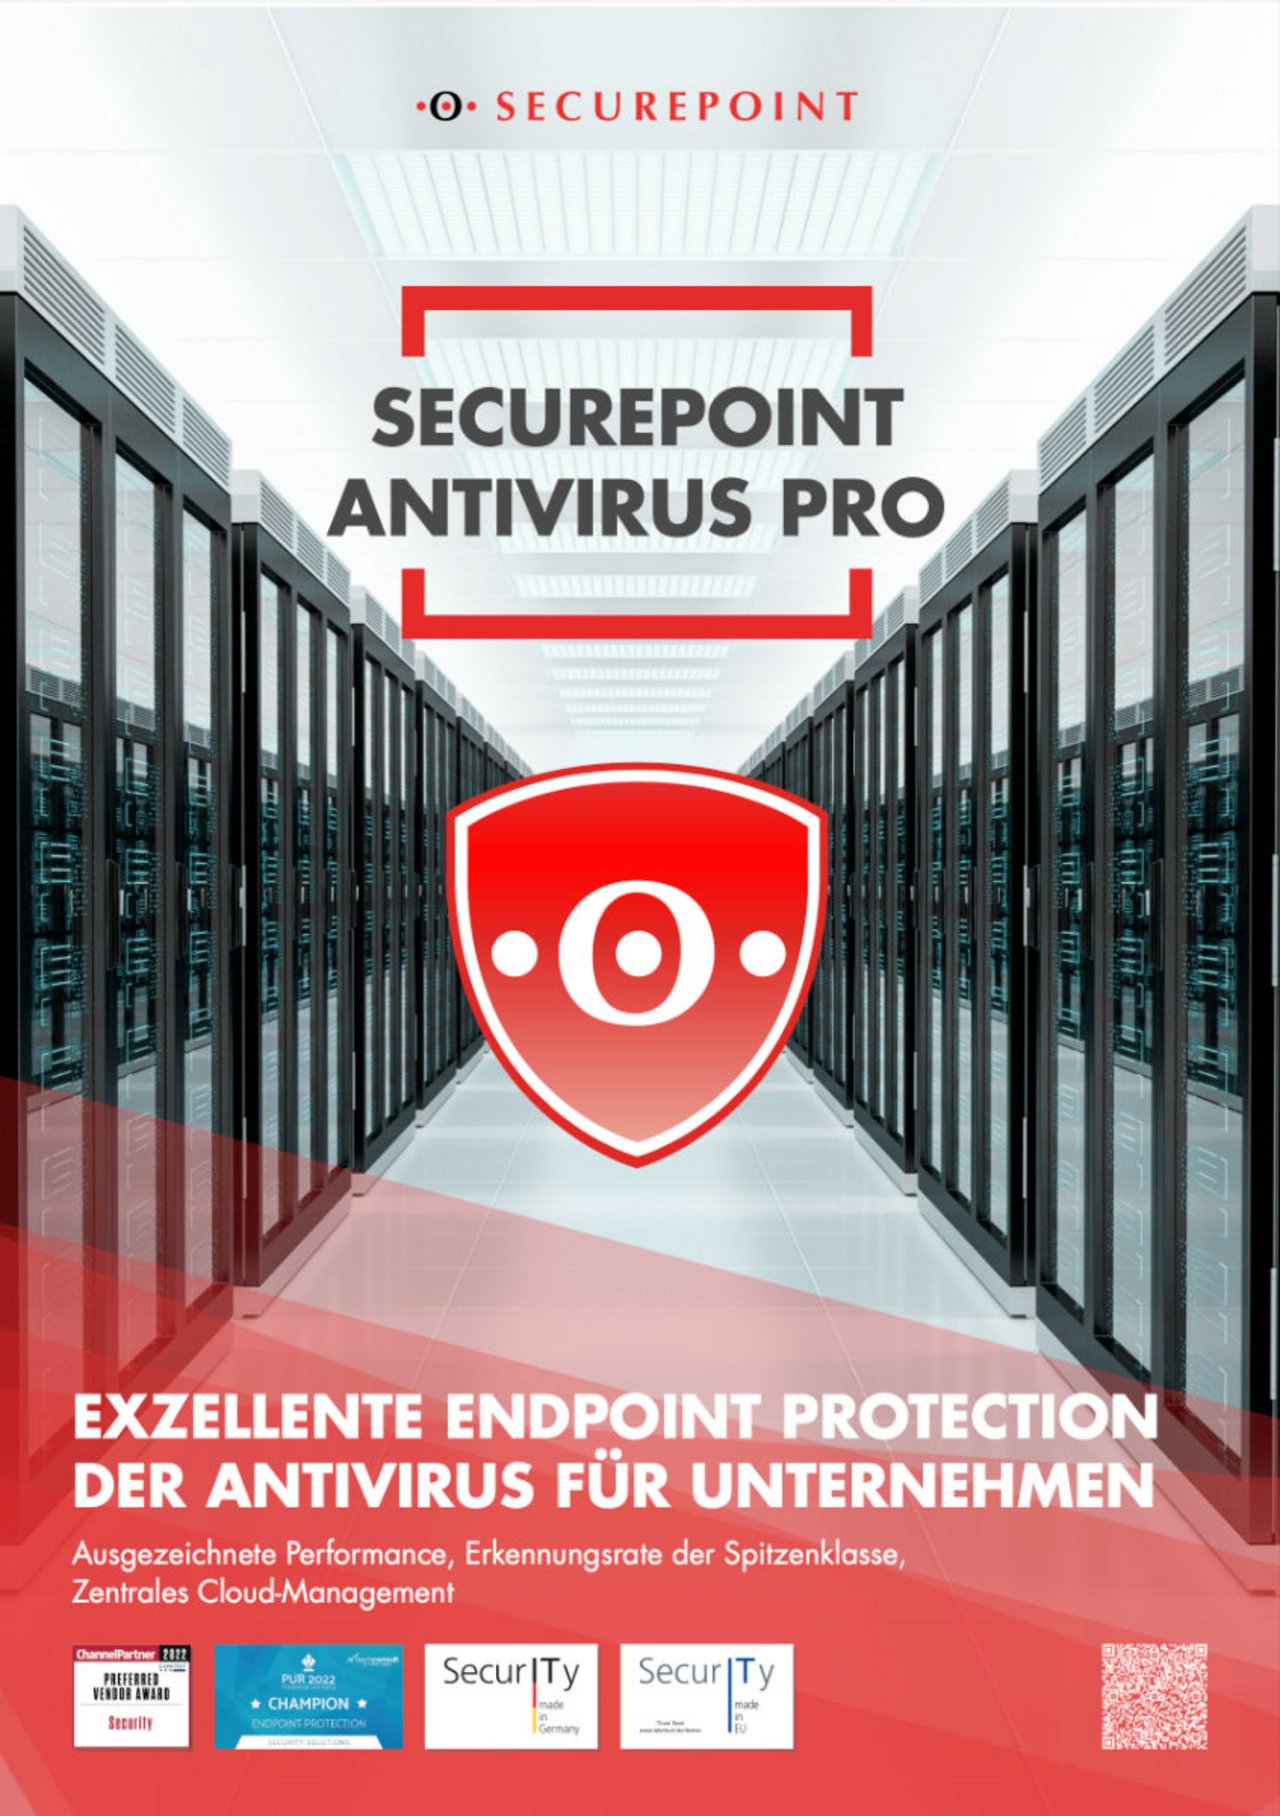 Titel des Prospekts für Securepoint Antivirus Pro